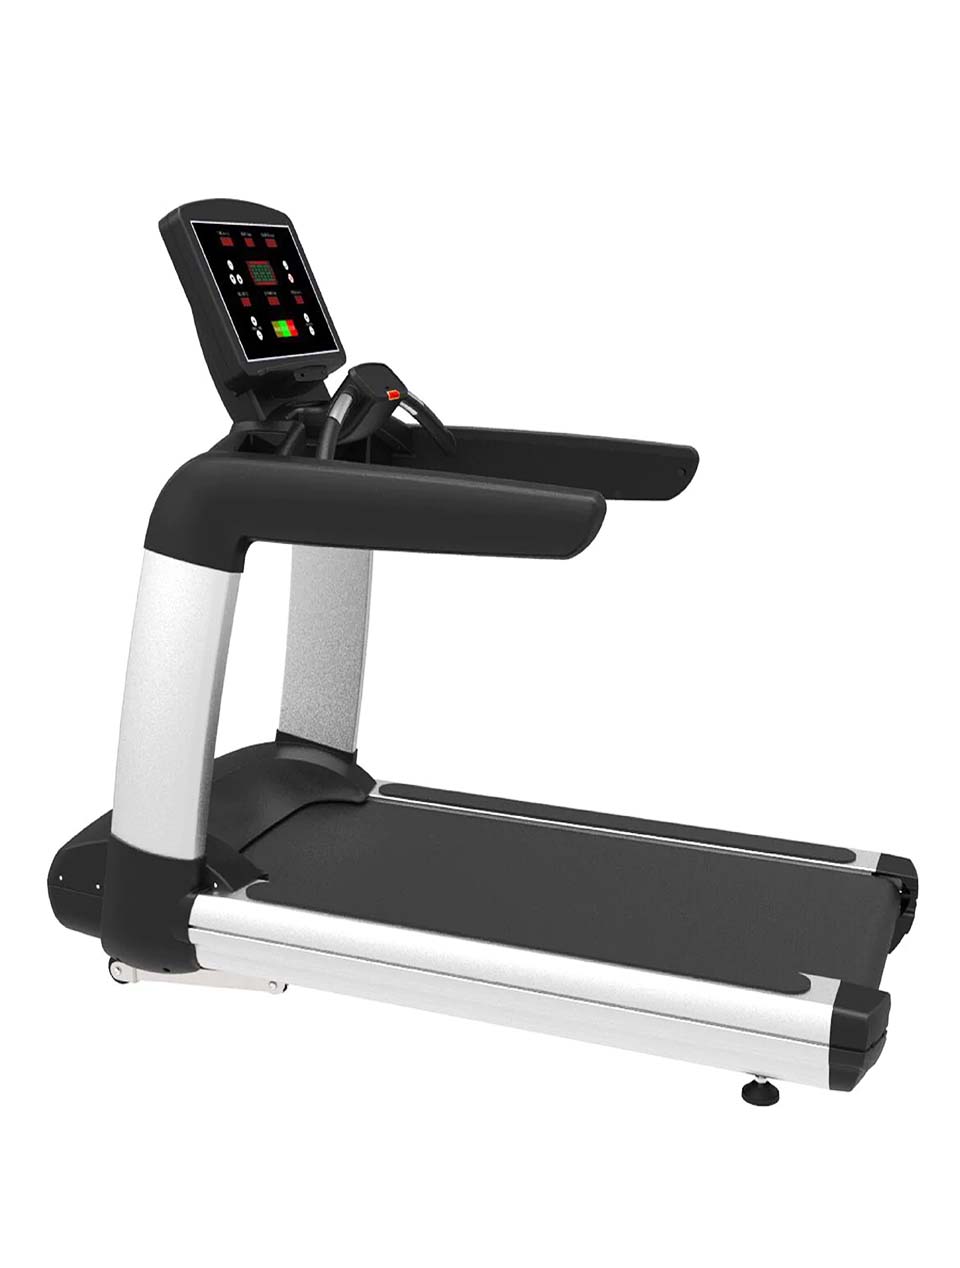 Afton Fitness JG-9500 Commercial Treadmill